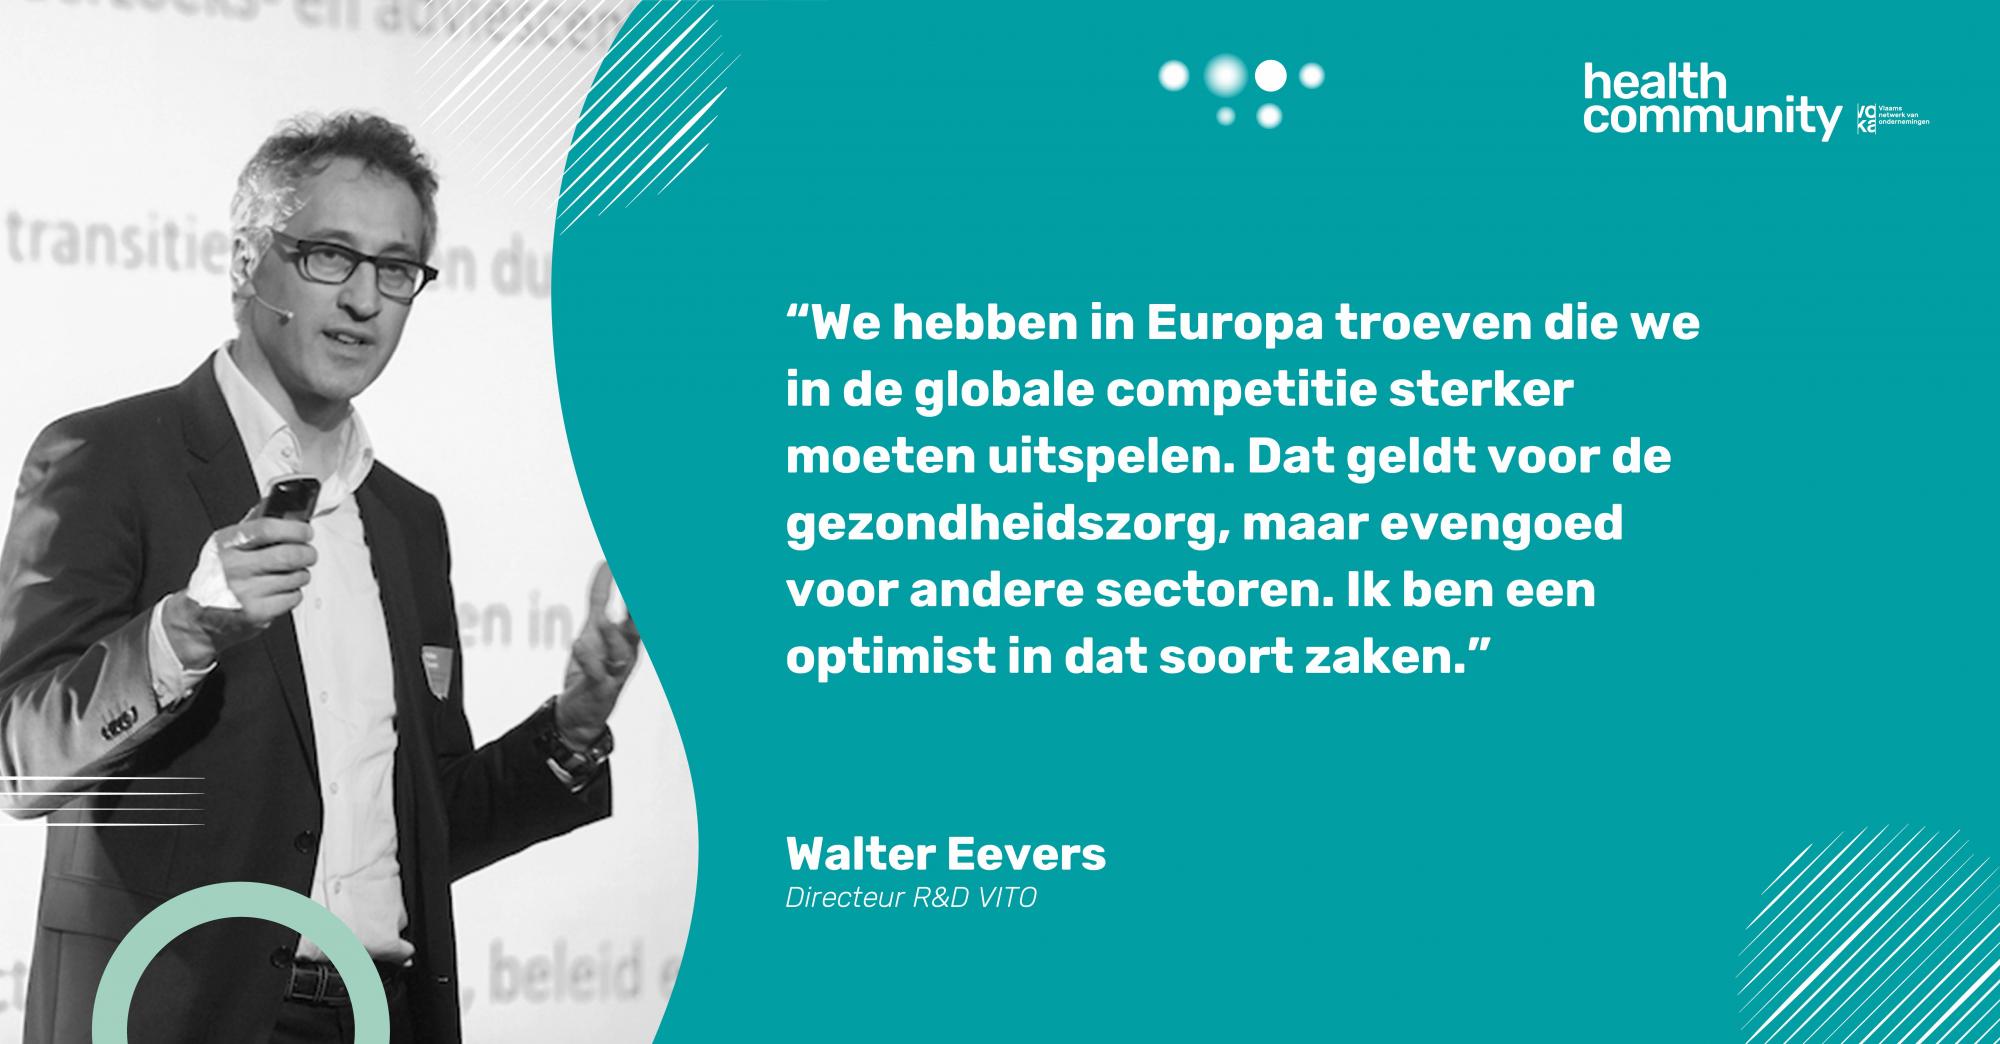 Walter Eevers